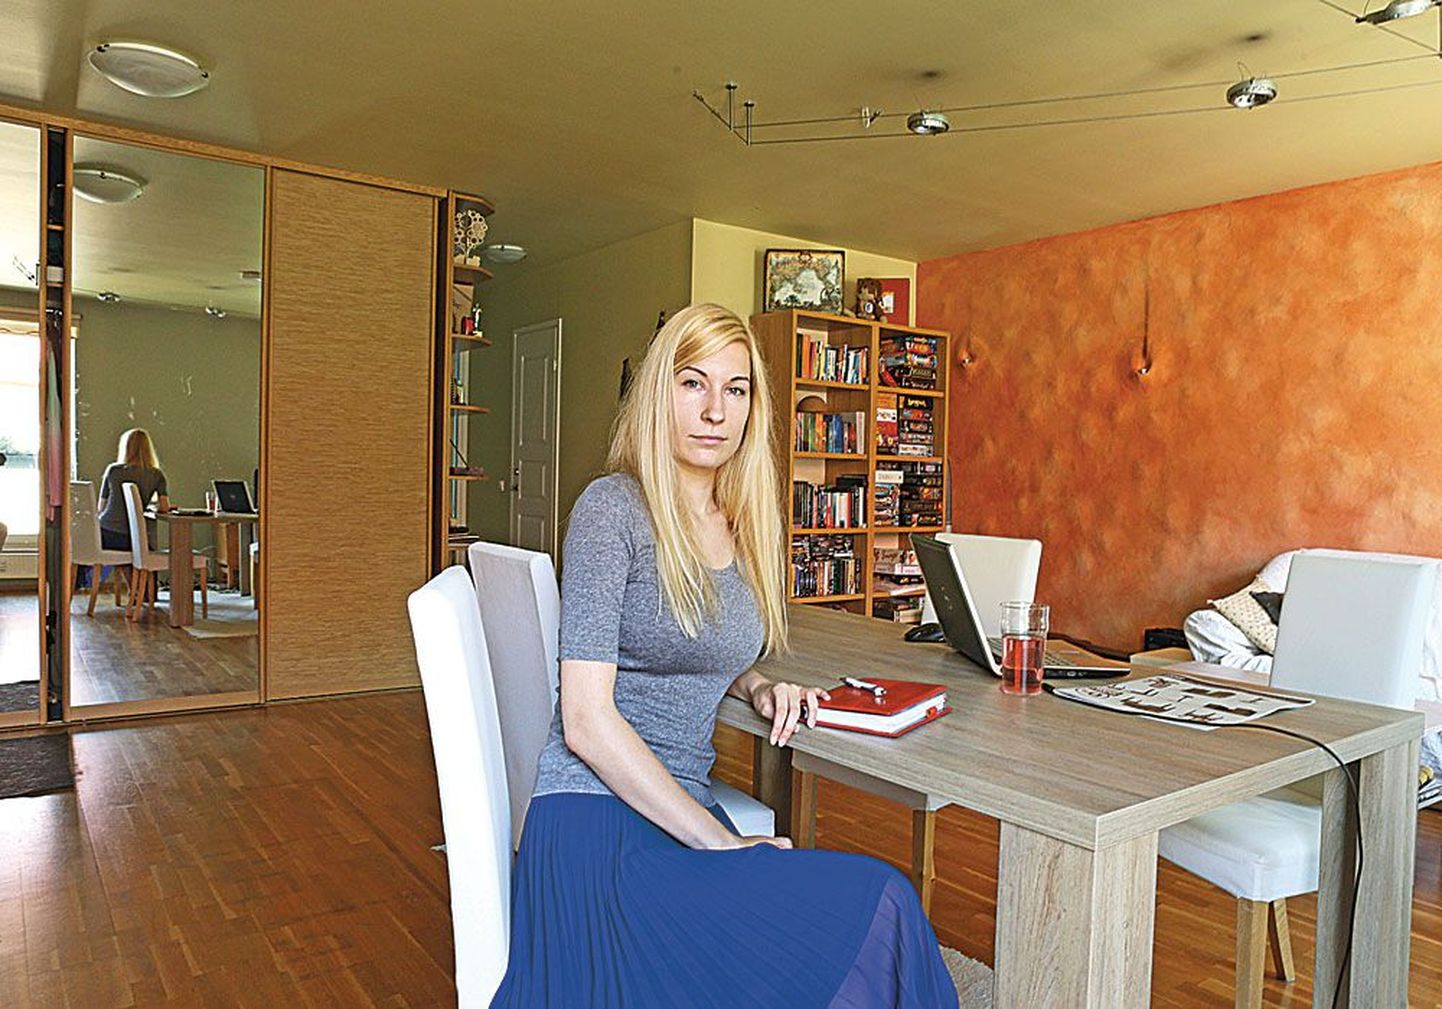 Лийзу Арумяэ нашла квартиру в центре Таллинна, потратив на поиски много времени, так как хорошие предложения быстро исчезают с рынка.